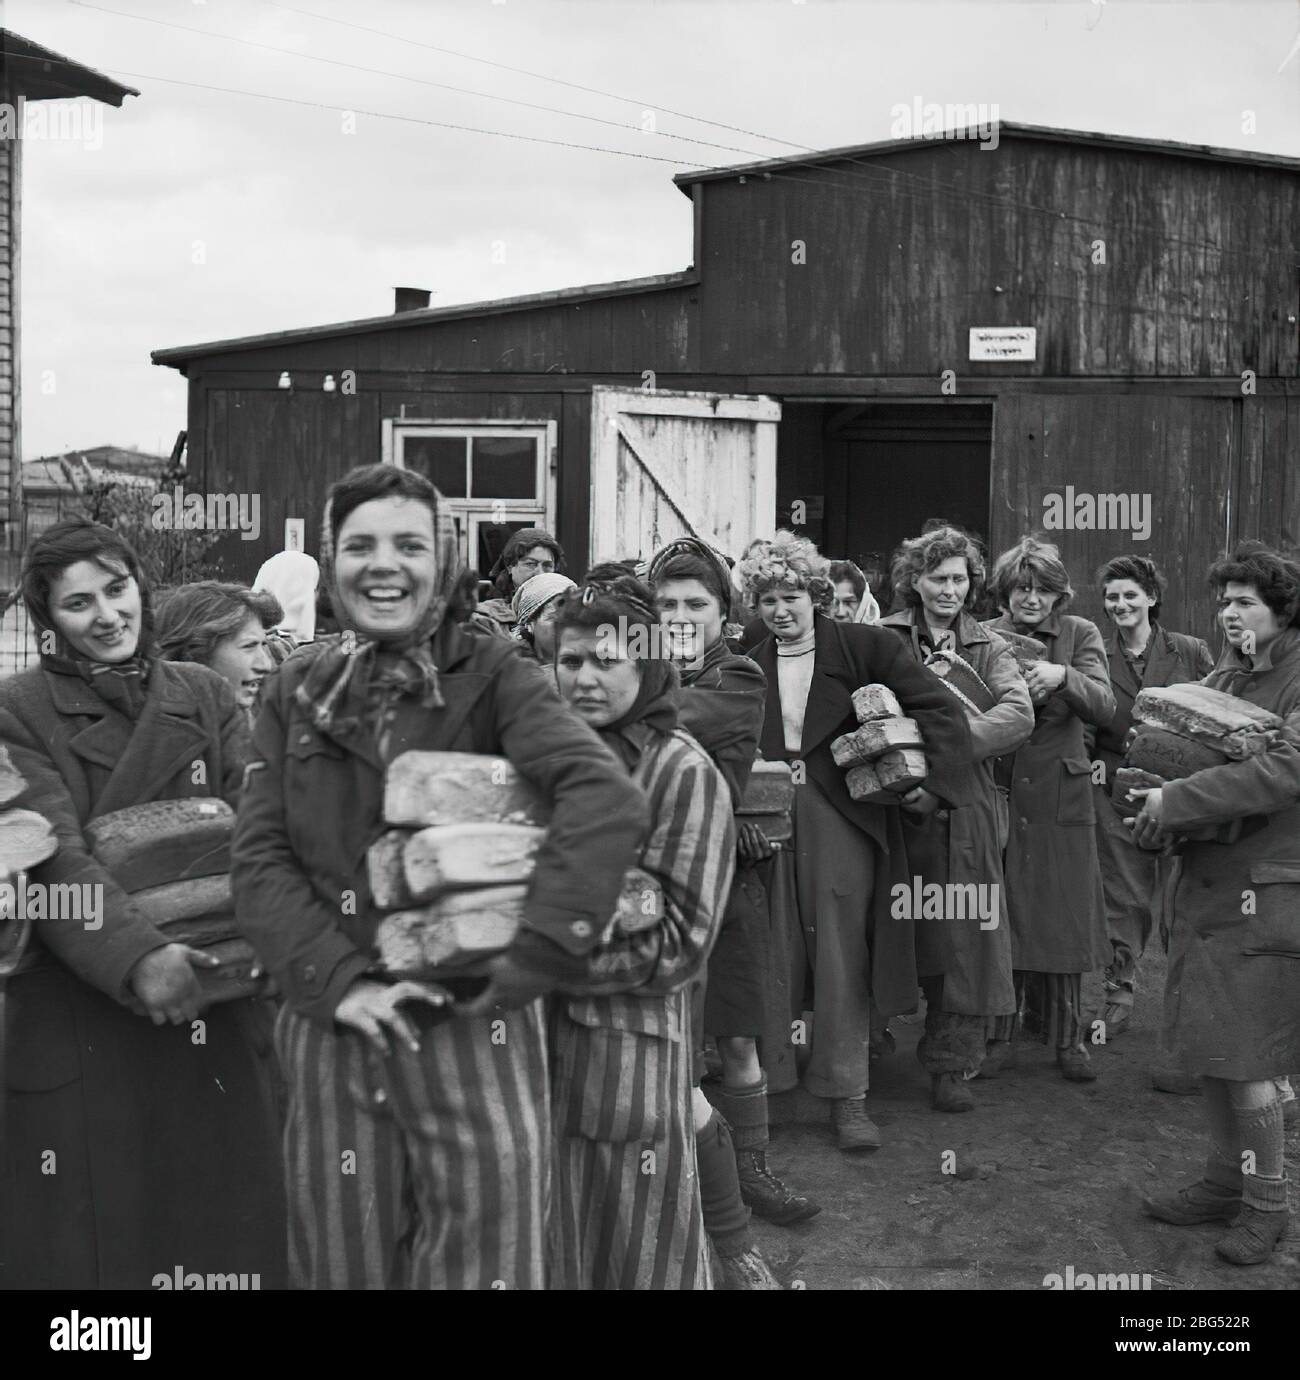 Documentaire de la seconde Guerre mondiale. Les prisonniers du camp de concentration de Bergen-Belsen collectent avec joie des rations de pain lors de leur libération par les forces britanniques en avril 1945. Banque D'Images